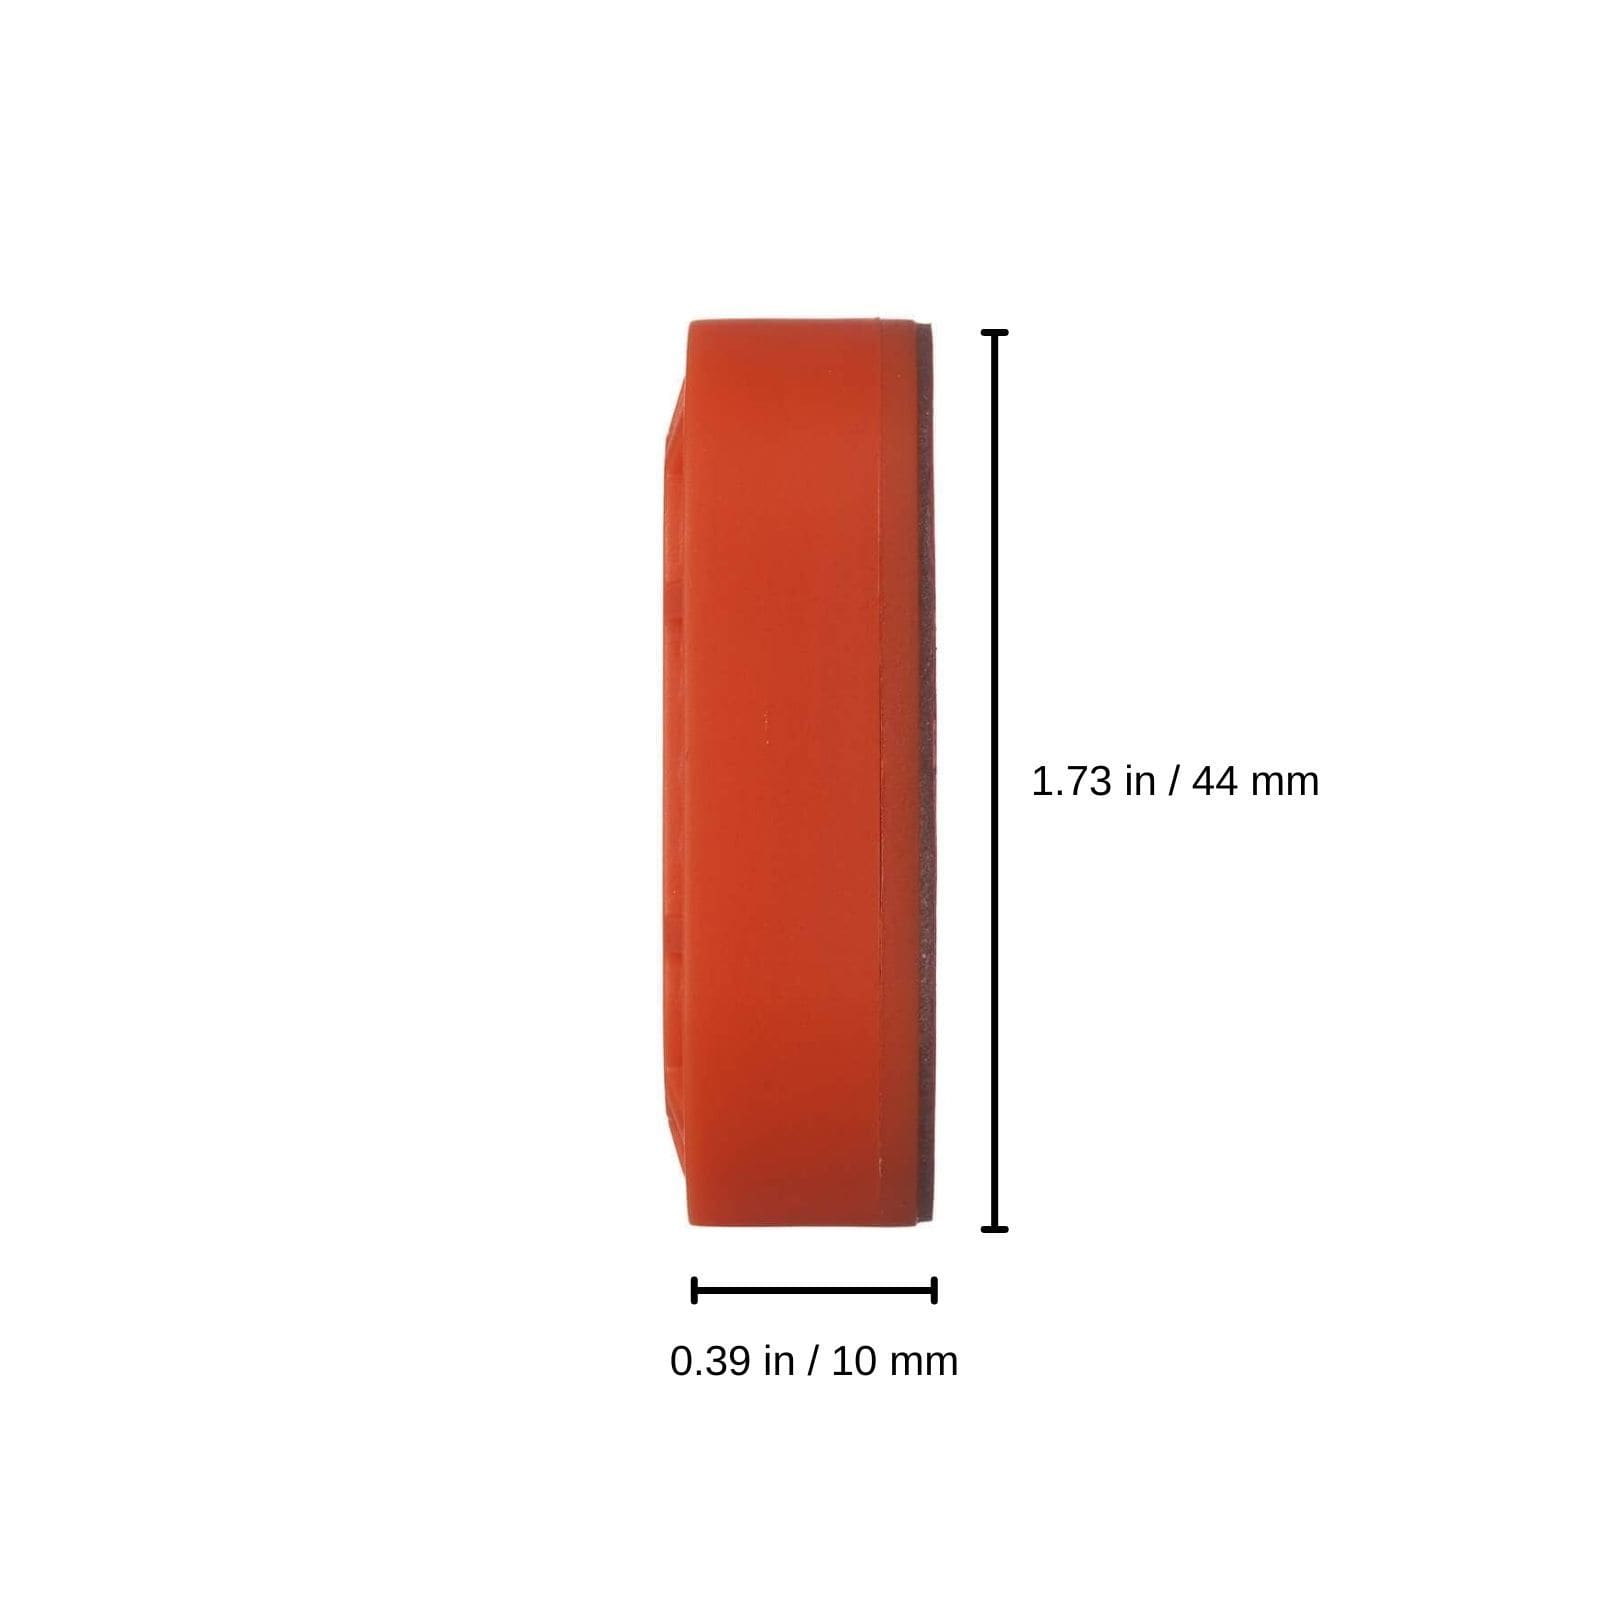 0.39 in / 10 mm x 1.73 in / 44 mm color::Orange